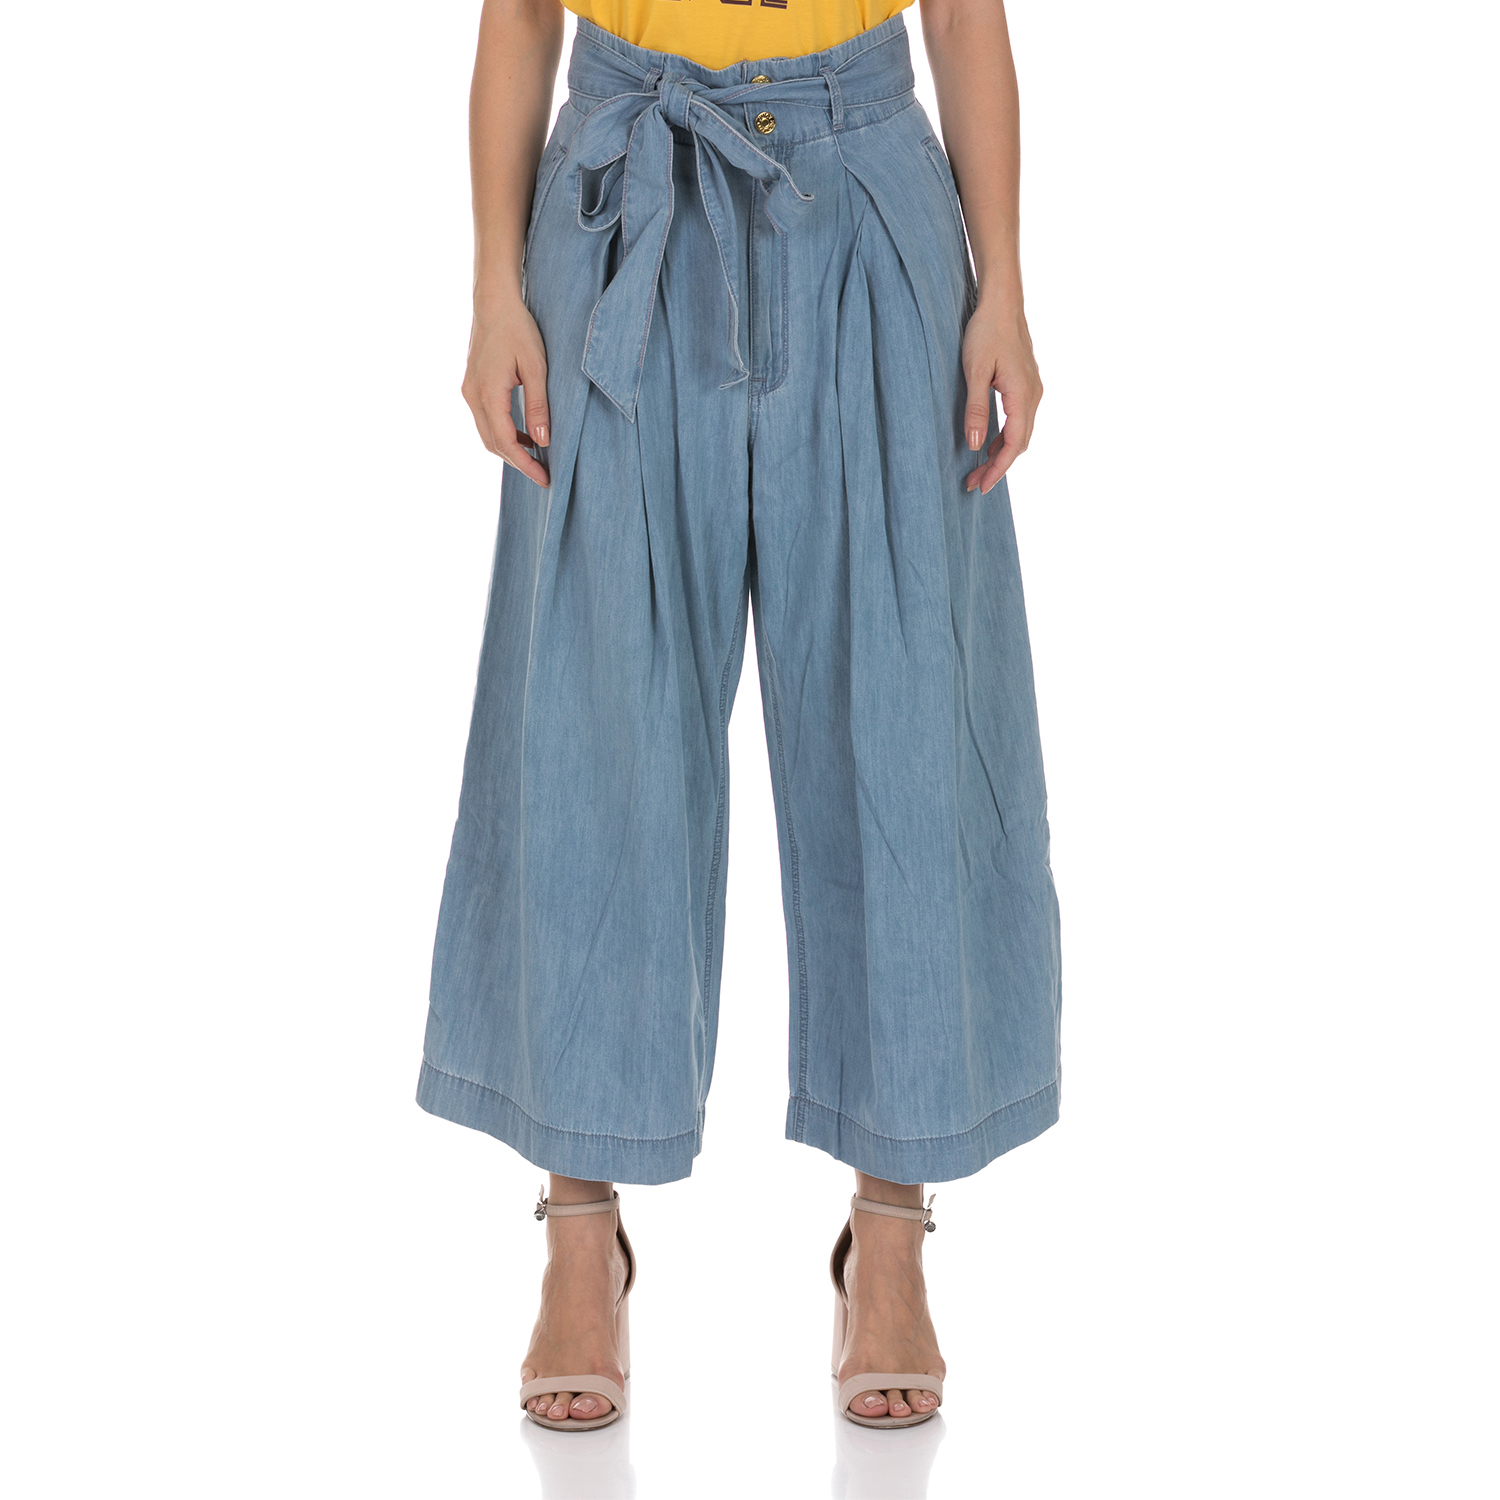 Γυναικεία/Ρούχα/Παντελόνια/Cropped JUICY COUTURE - Γυναικεία παντελόνα JUICY COUTURE CHAMBRAY CROP γαλάζια